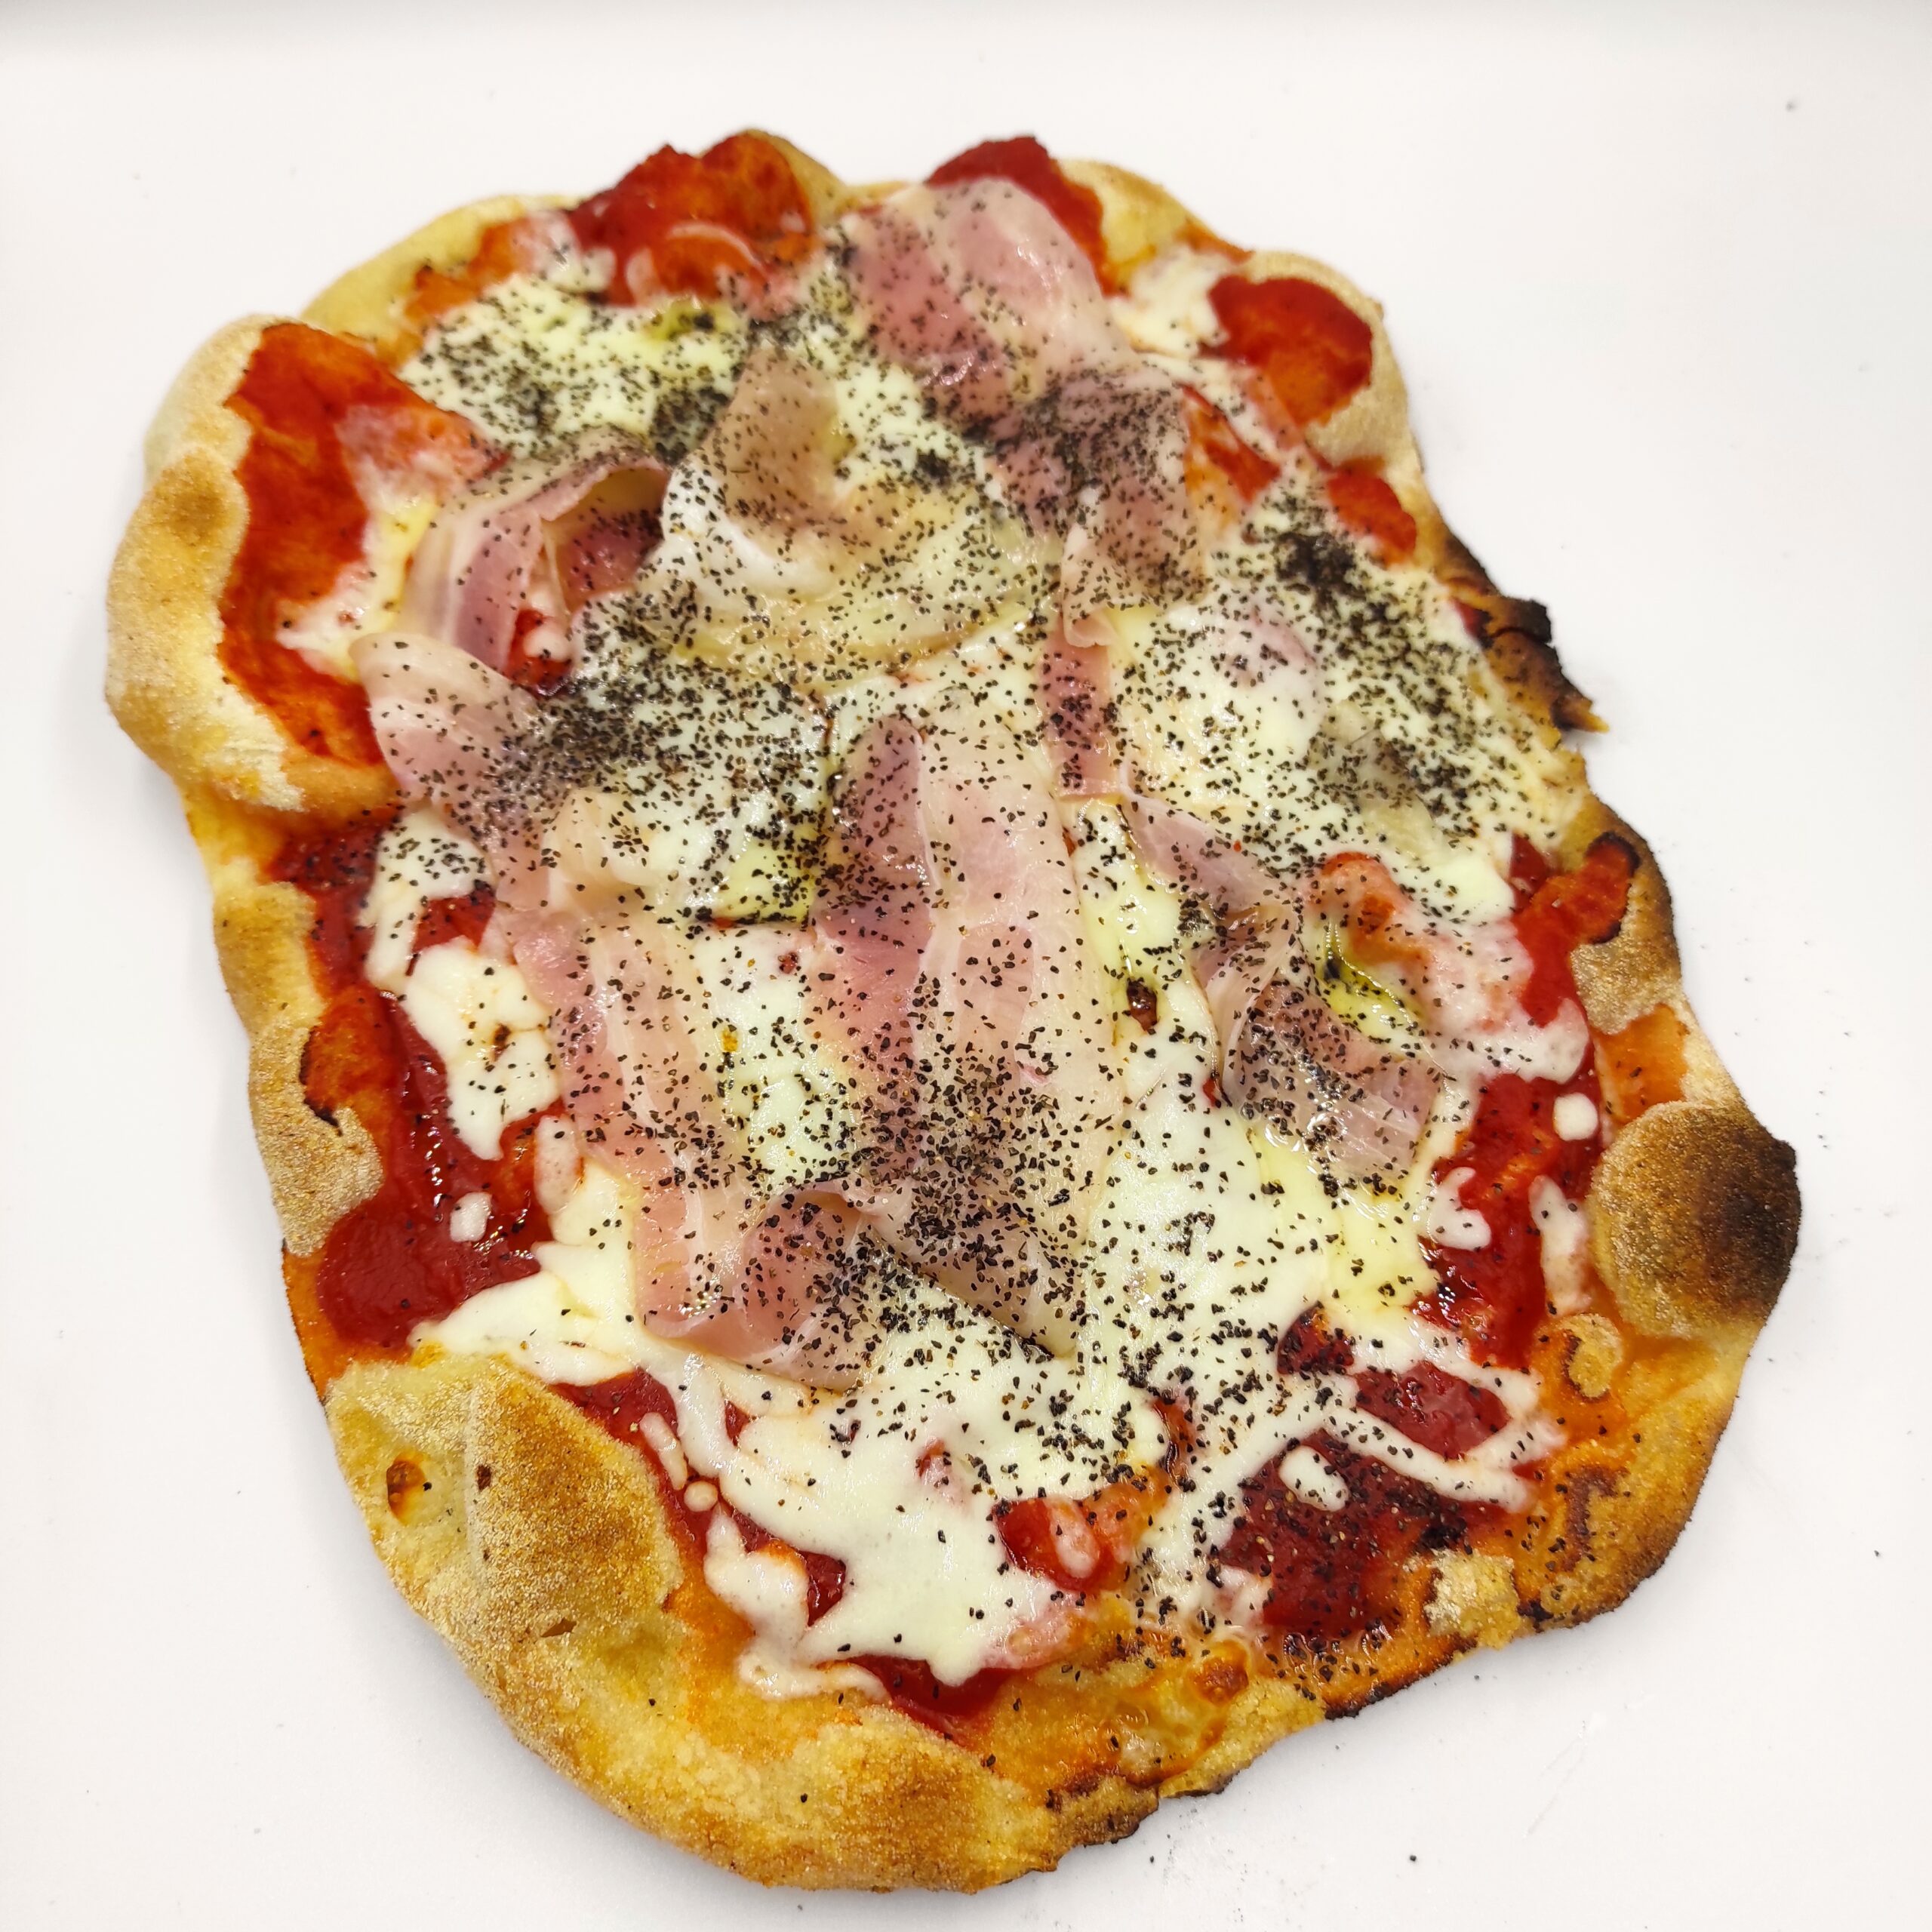 pinsa amatriciana - the Roman pizza